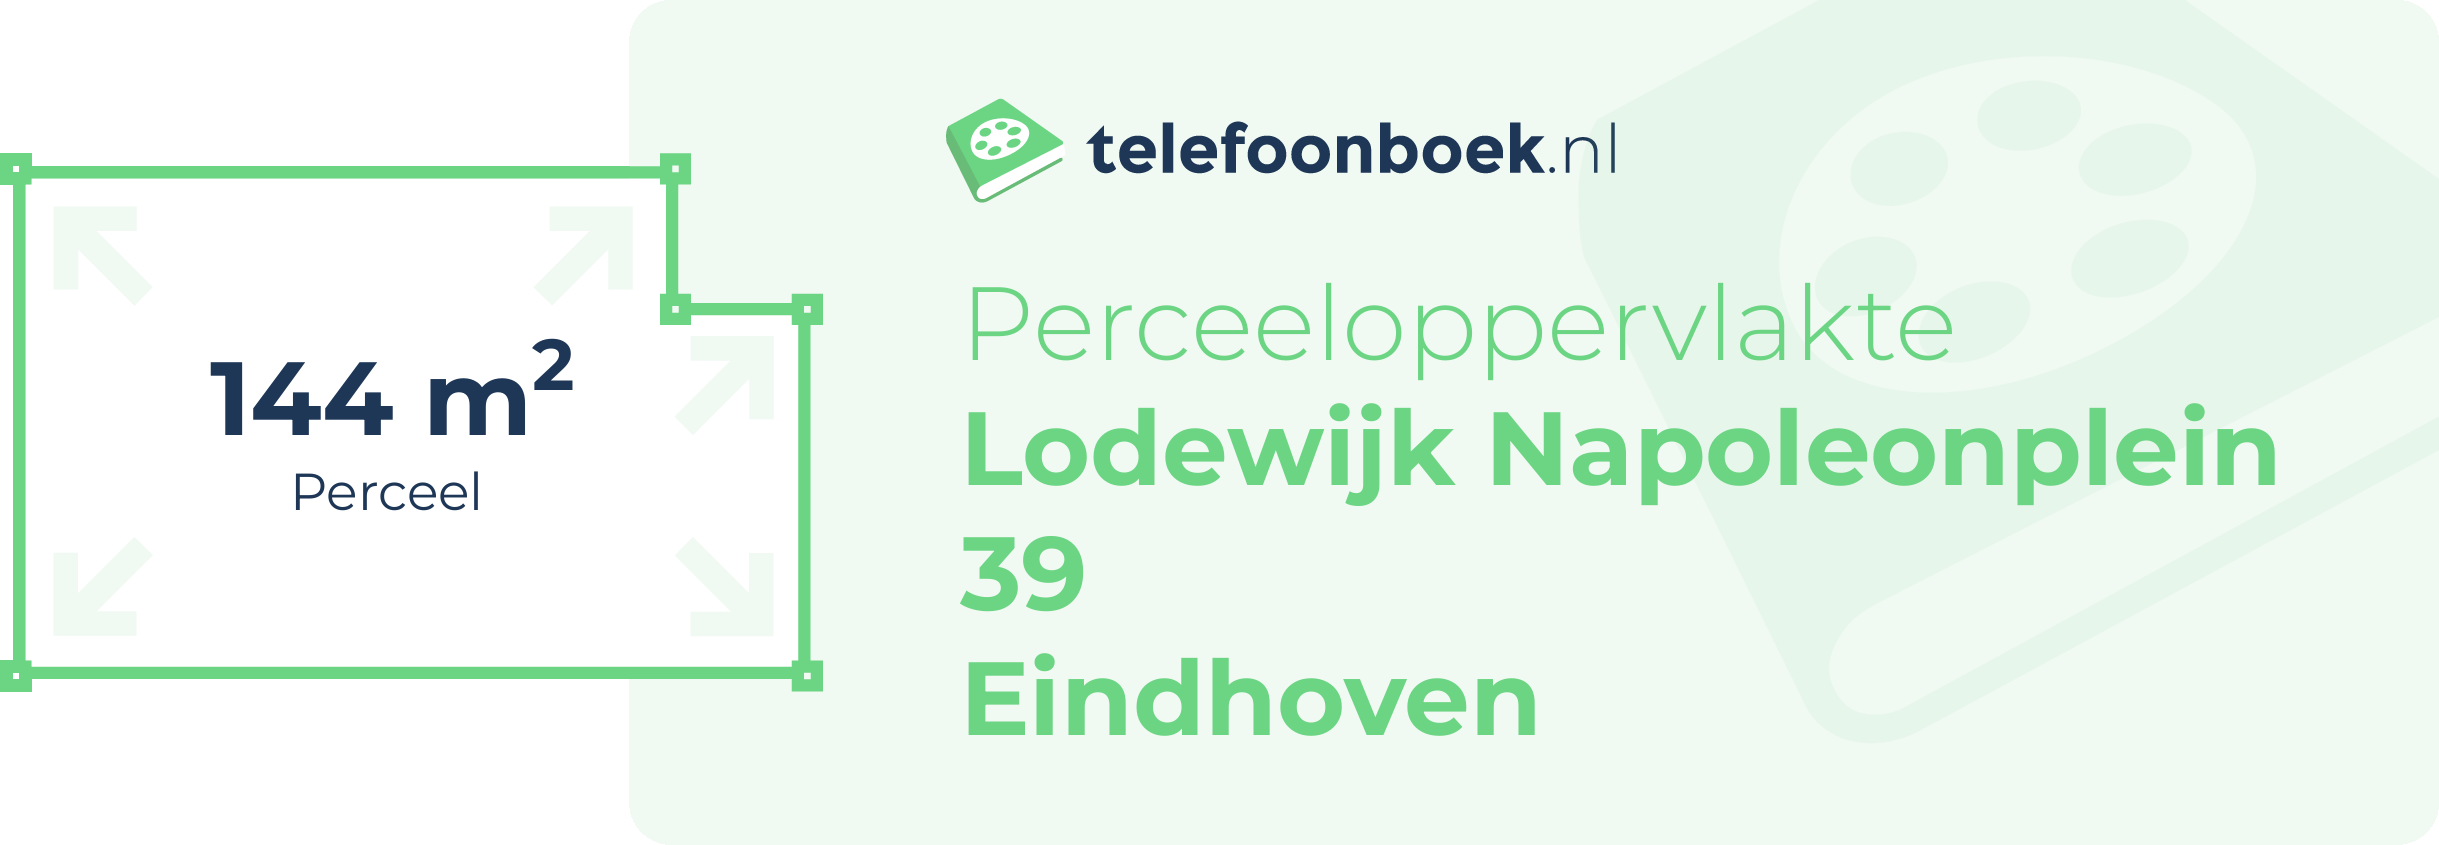 Perceeloppervlakte Lodewijk Napoleonplein 39 Eindhoven